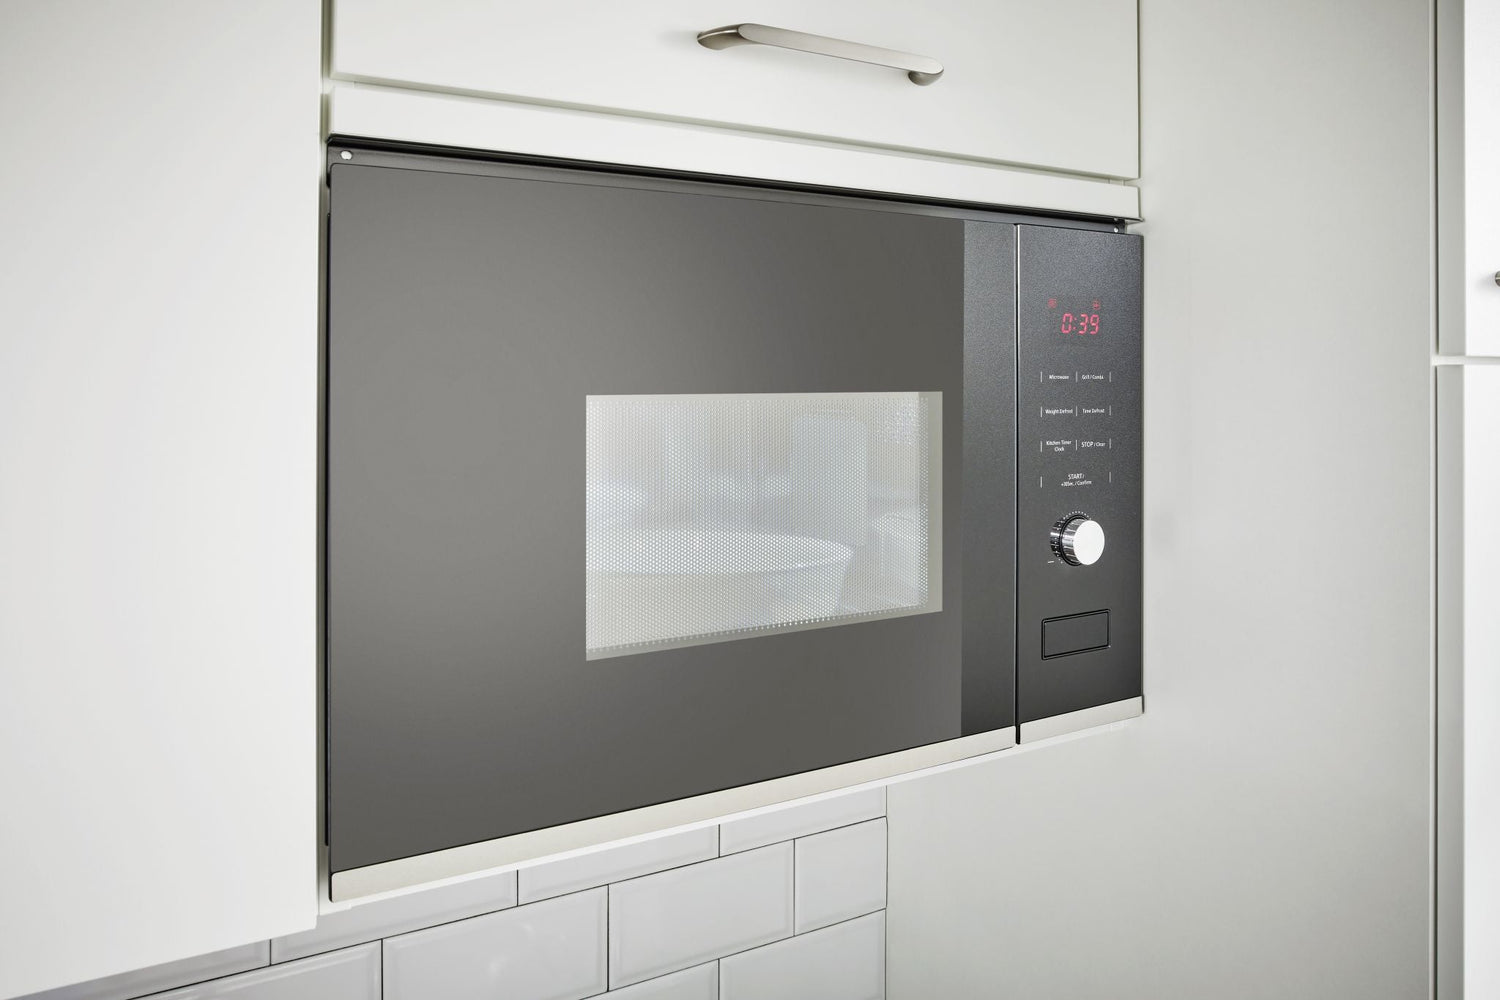 Küchenzeile 240 cm, Weiß , Komplettküche mit Einbaugeräten, Spüle und Mischbatterie Pino Küchenblöcke & Pantryküchen